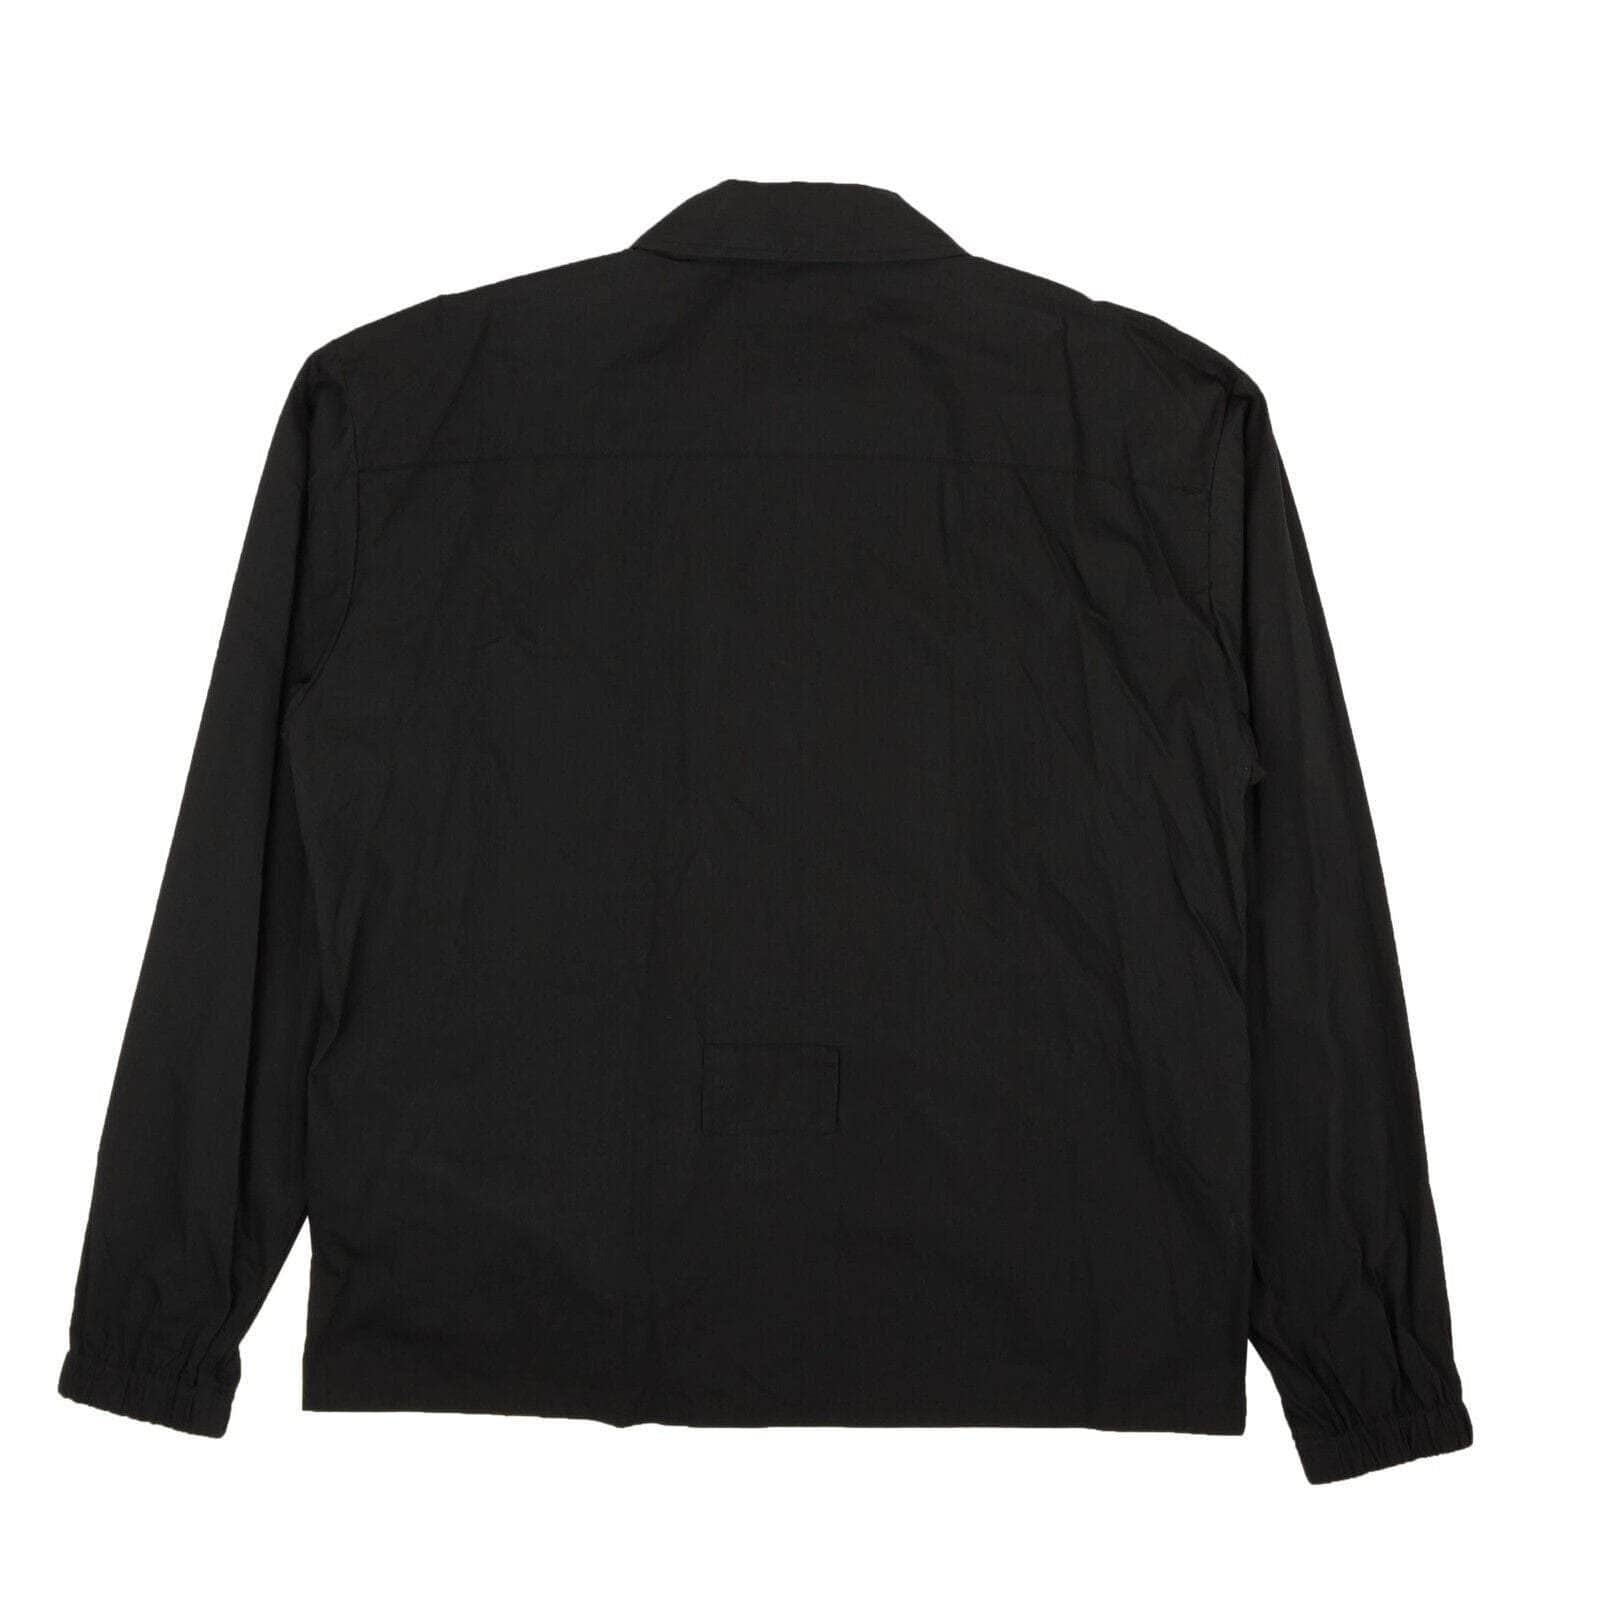 Ambush S / 12112016_0_BLACK Black Zip Pocket Shirt Jacket 95-AMB-1036/S 95-AMB-1036/S